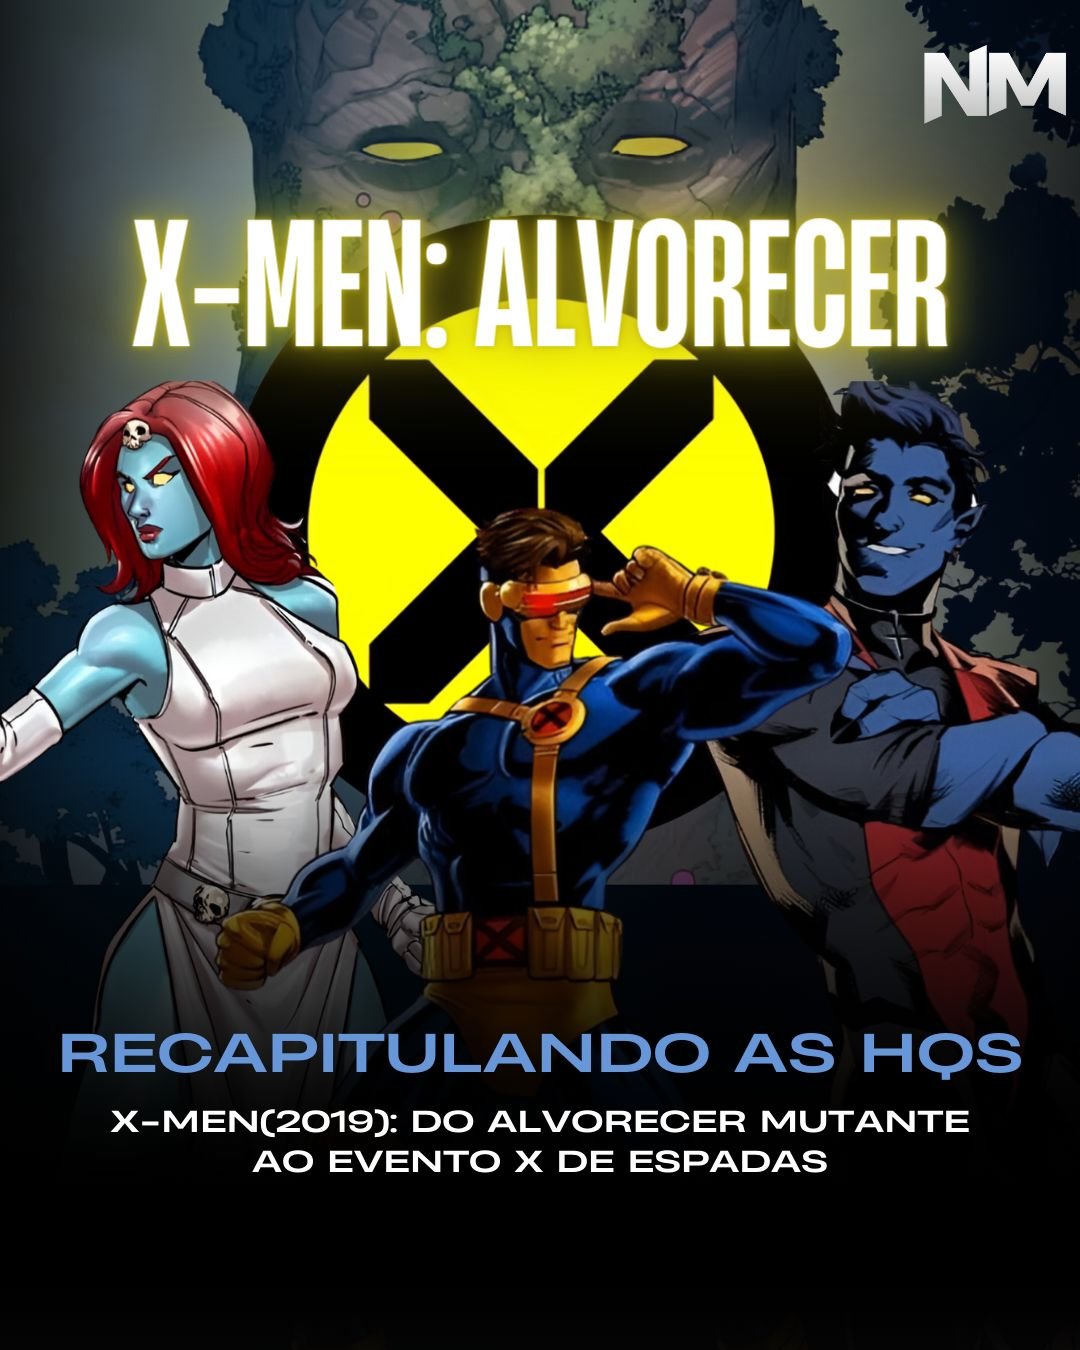 Os Novos Mutantes: novo teaser mostra poderes dos personagens; veja!